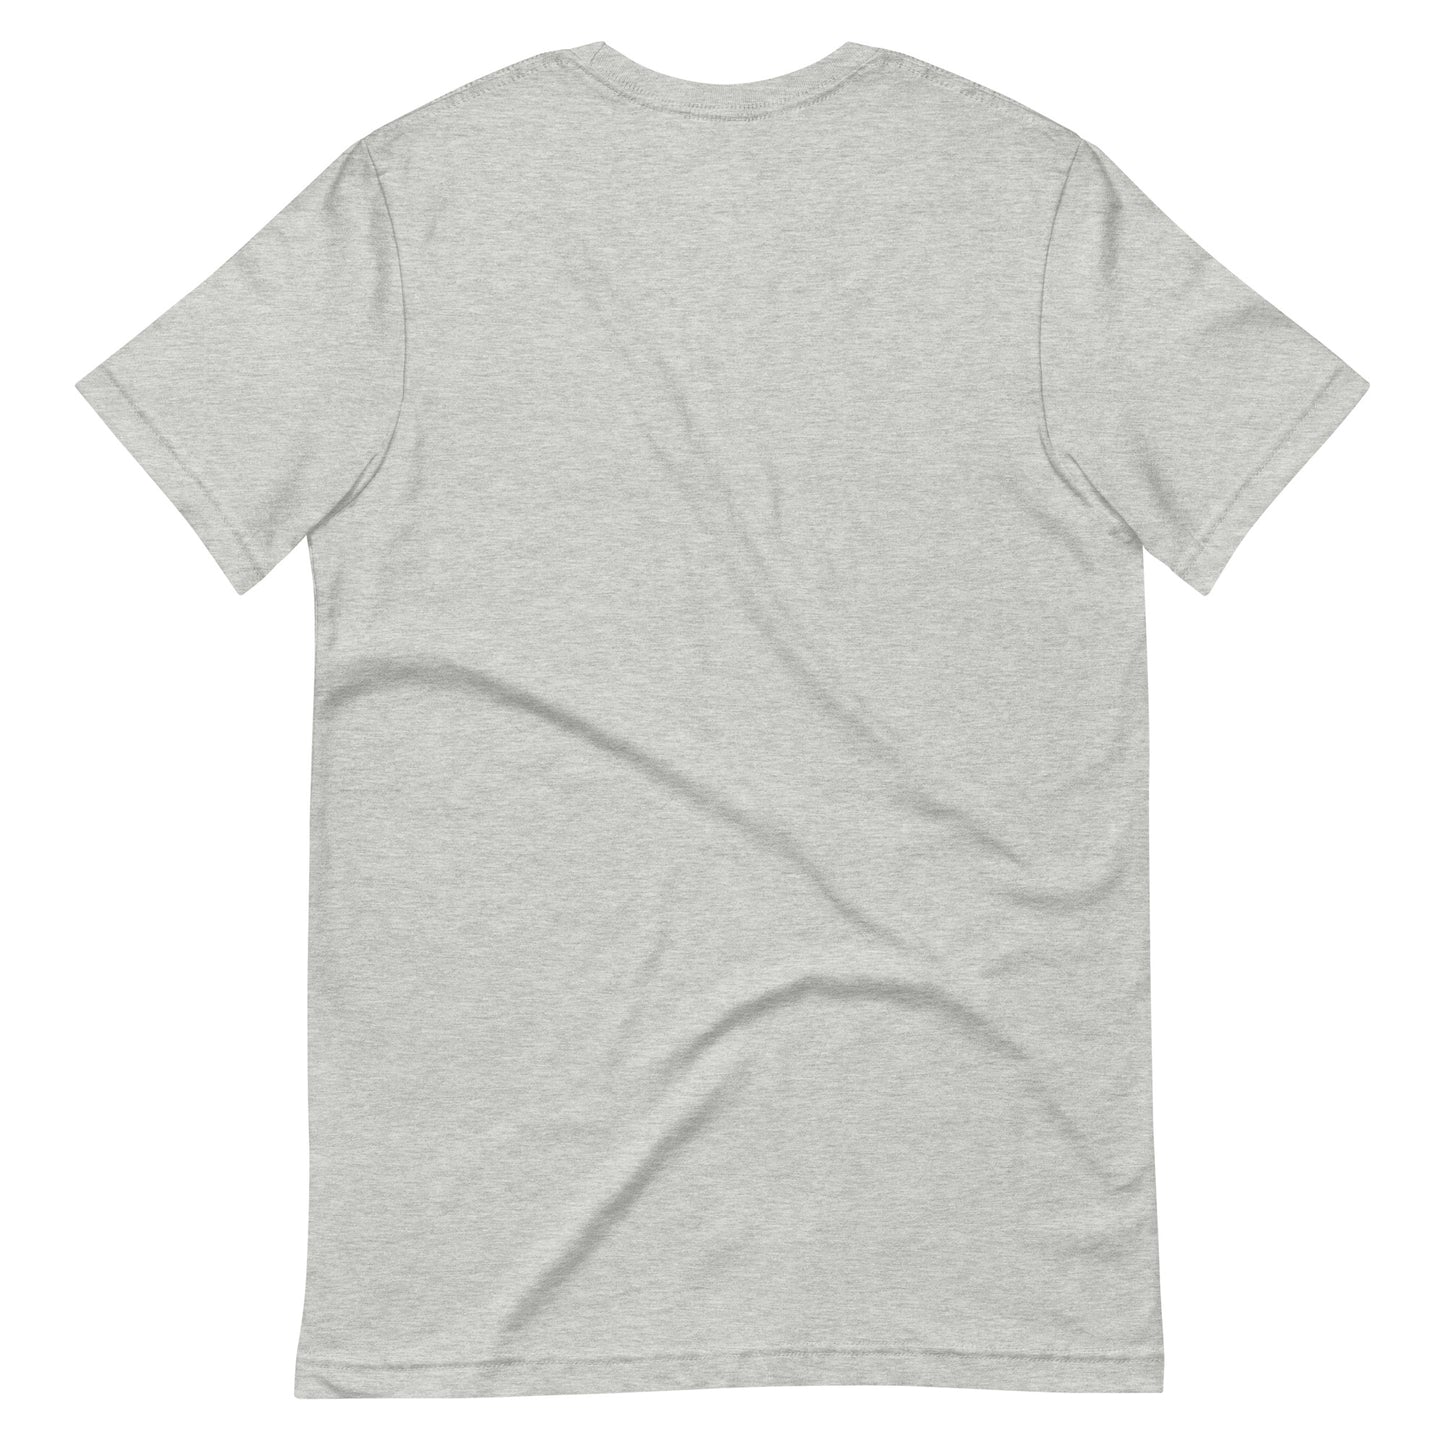 New York, New Me Unisex T-Shirt